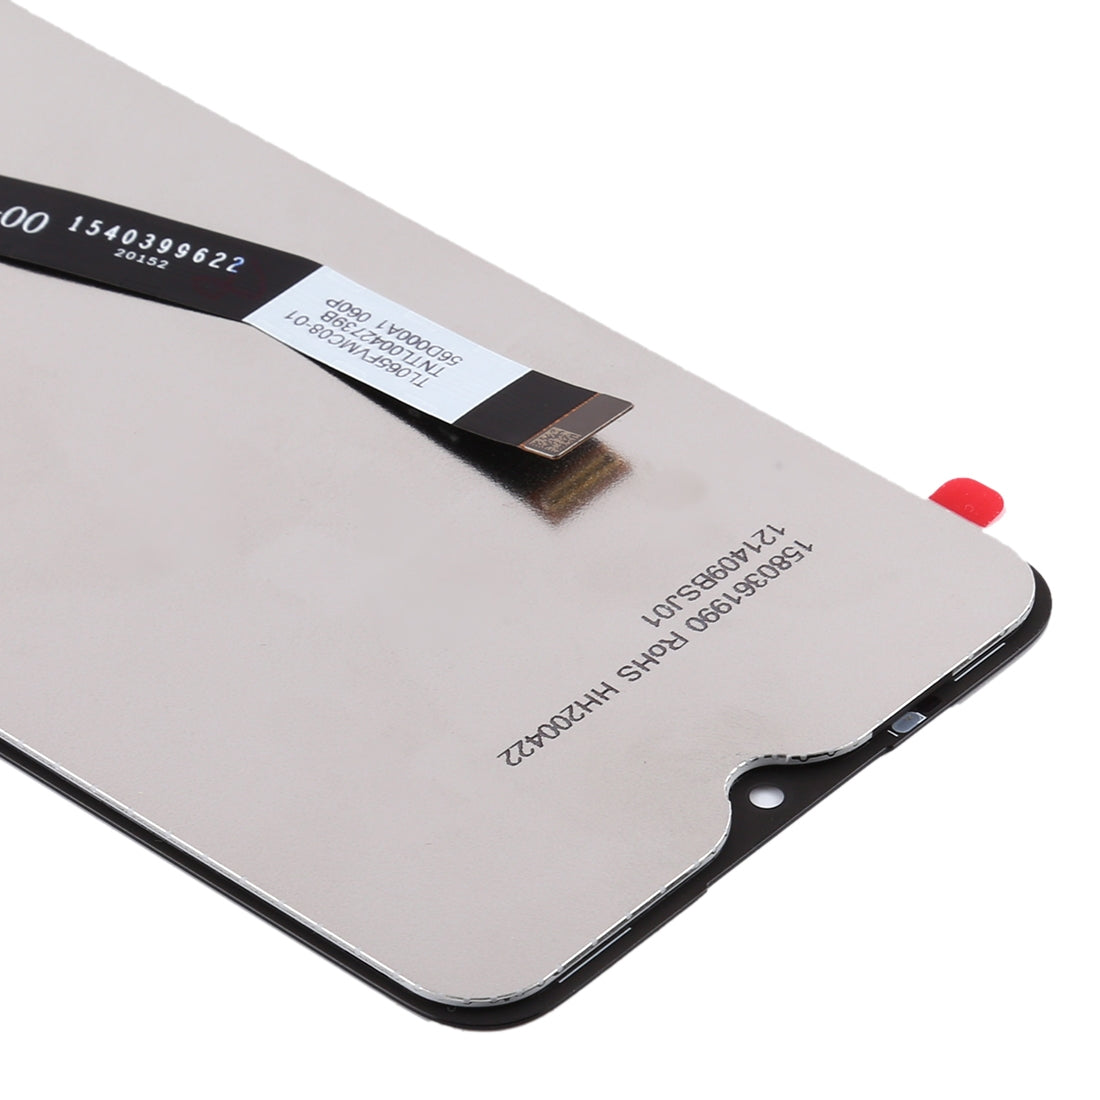 Pantalla LCD + Tactil Digitalizador Xiaomi Redmi 9 Negro